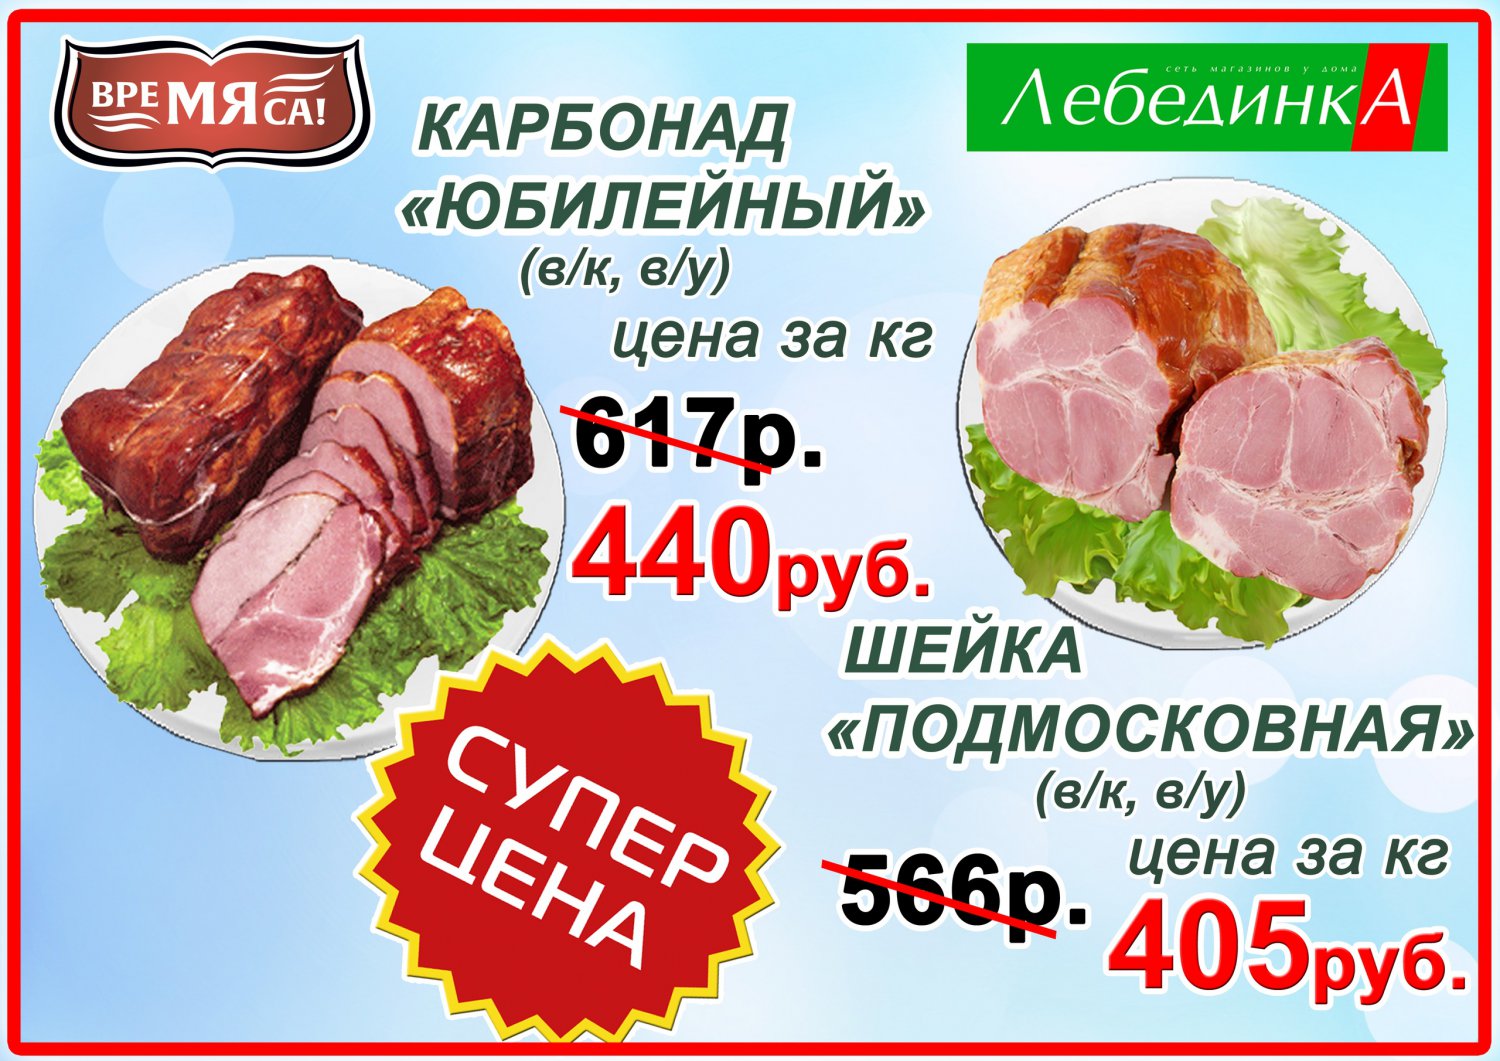 «Лебединка» снизила цены на шейку, карбонад и охлажденную свинину